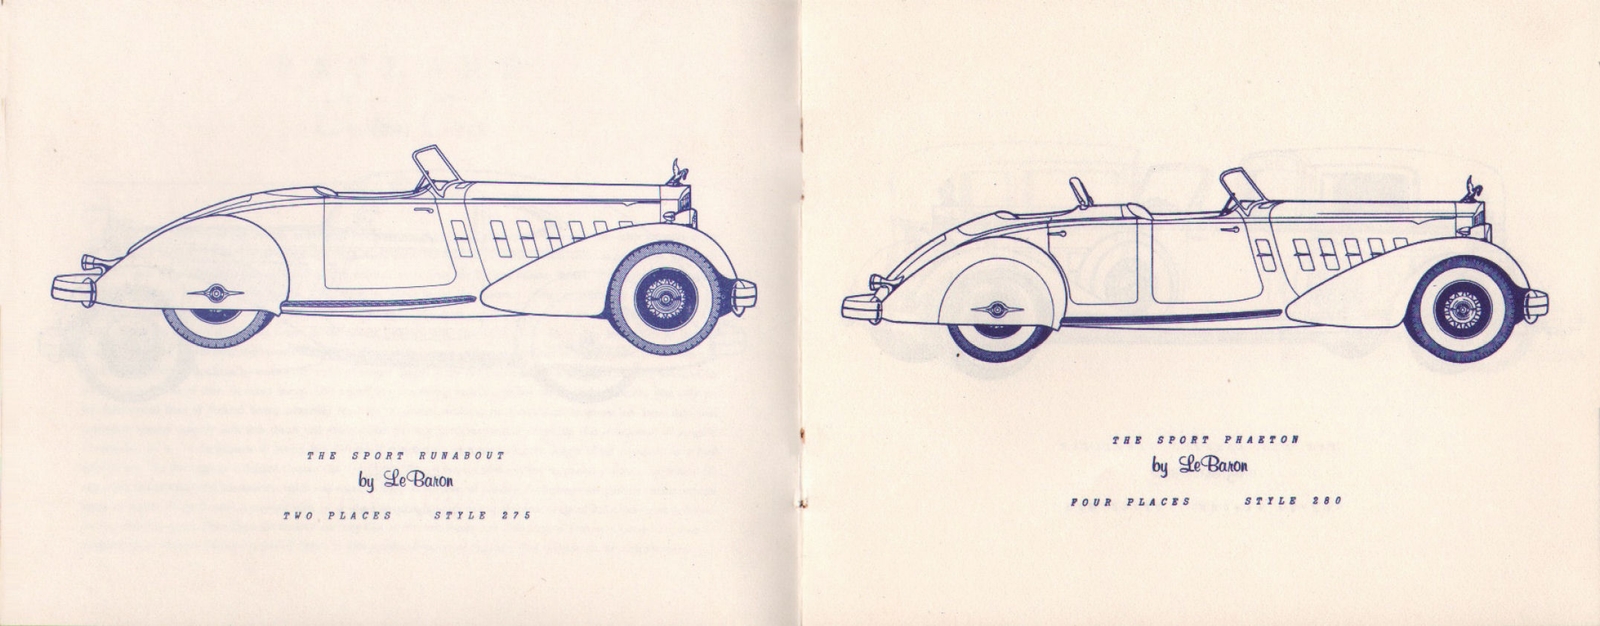 n_1934 Packard Custom Cars Booklet-04-05.jpg